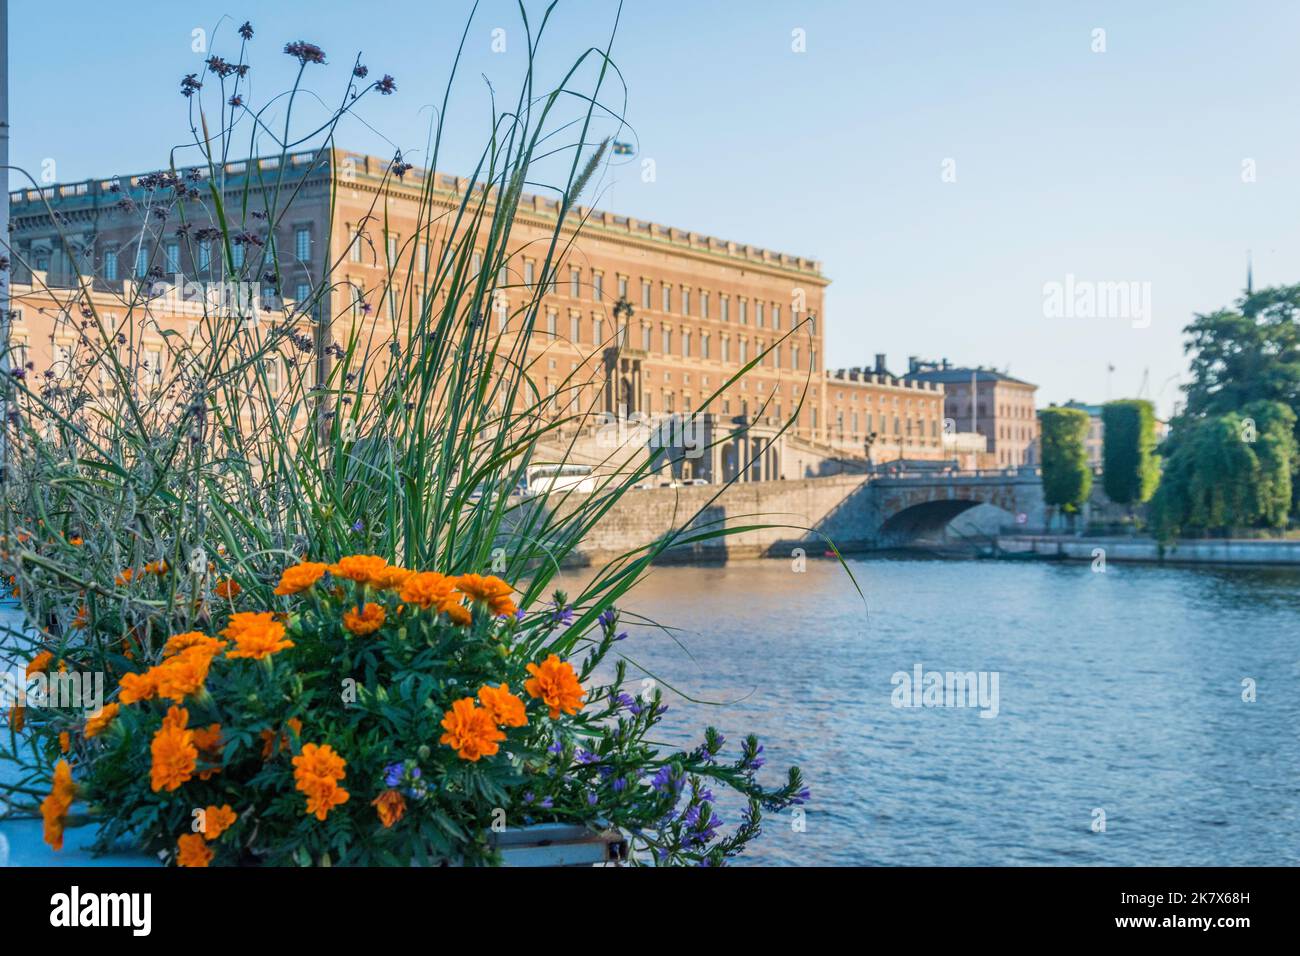 Front du Palais Royal vu derrière des fleurs d'orange à Stockholm Suède Stockholms slott Kungliga slottet Banque D'Images